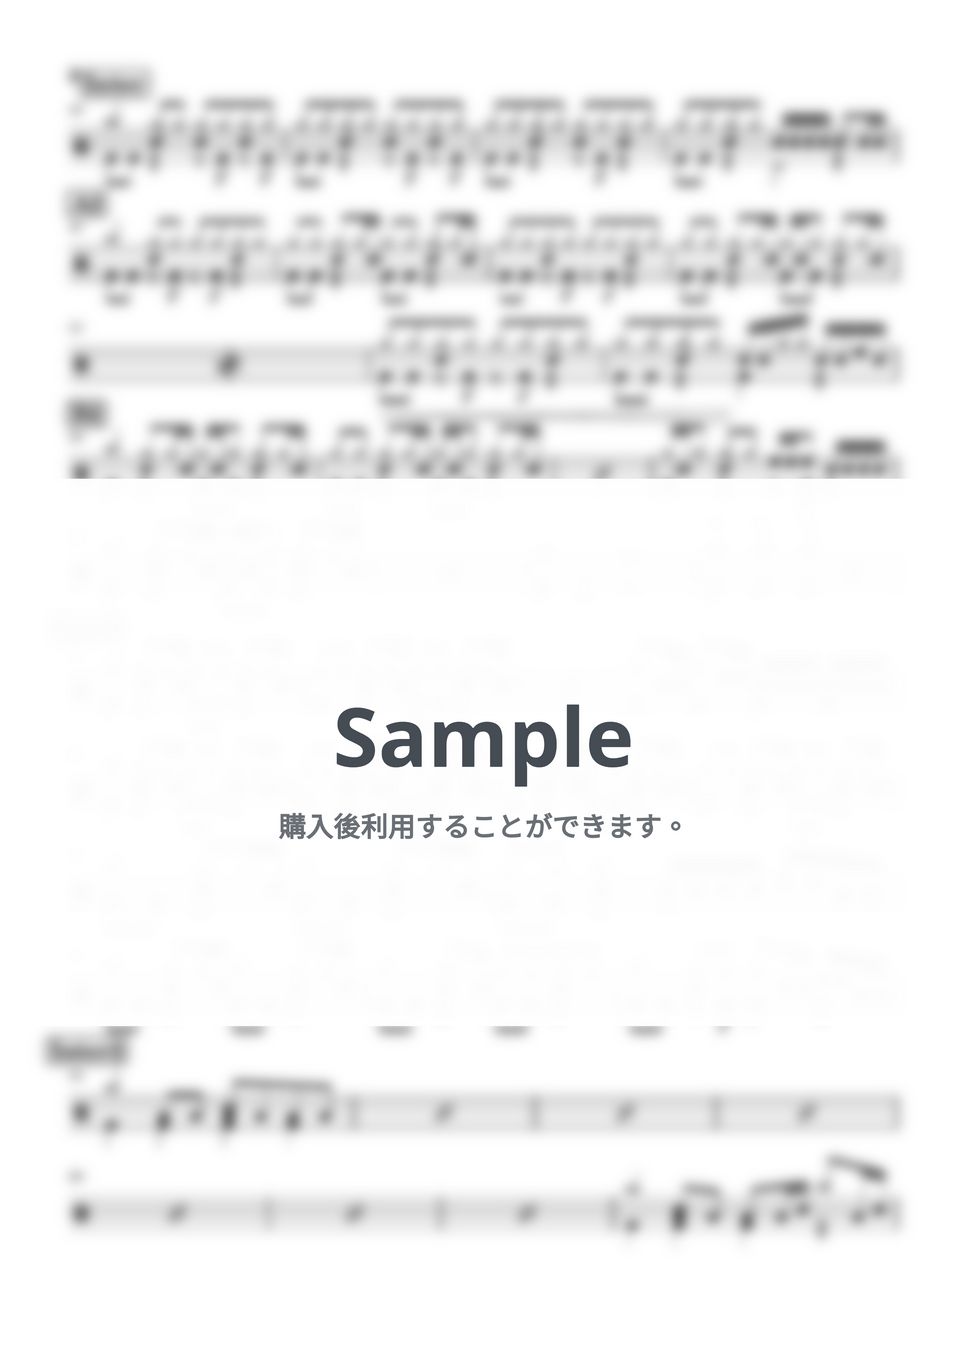 カネヨリマサル - わたし達のジャーニー (ドラム譜面) by cabal